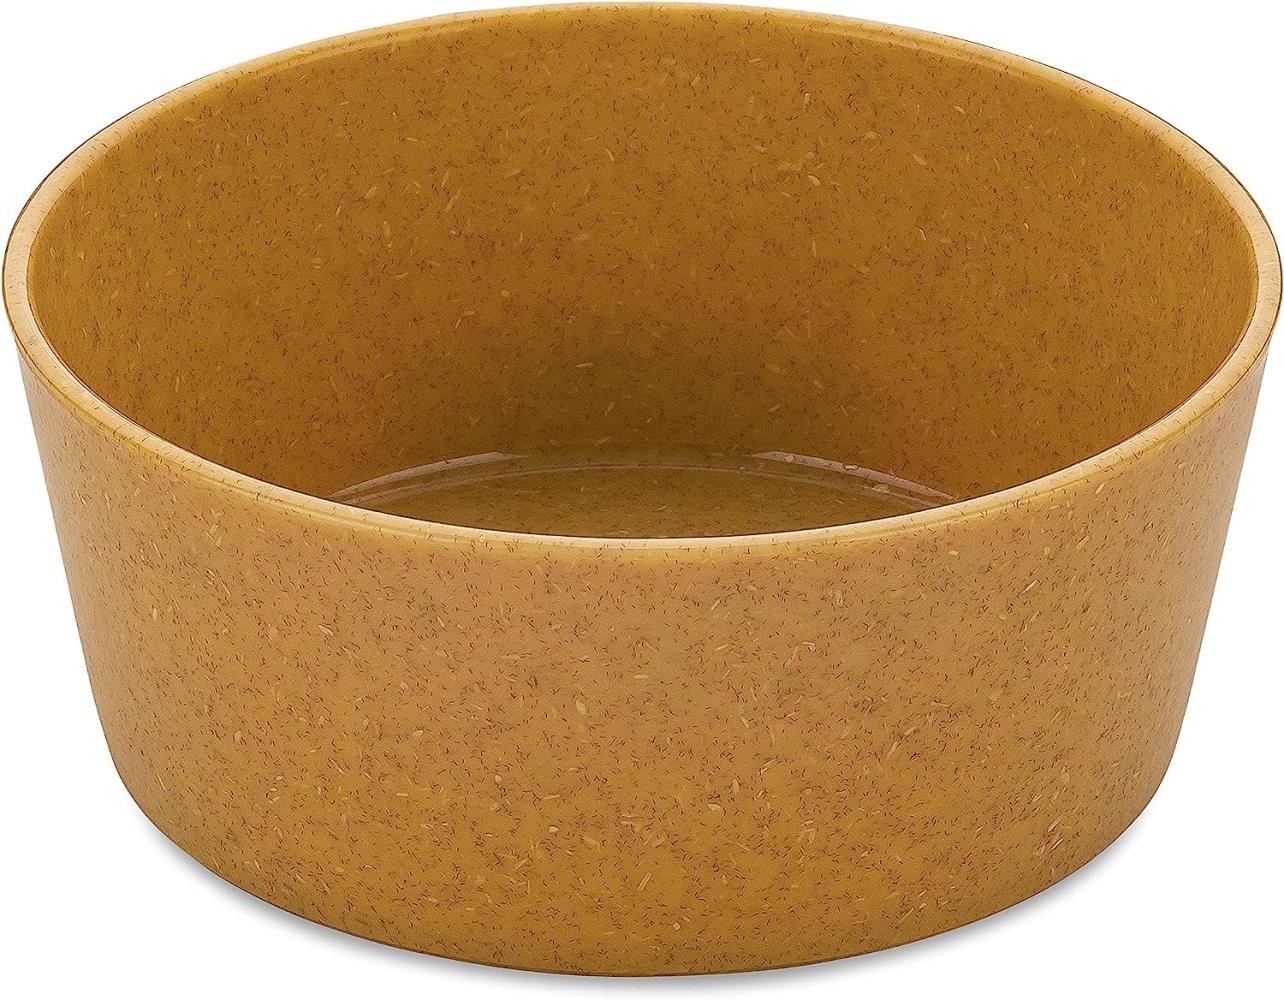 Koziol Schale Connect Bowl, 2er Set, Schüssel, Kunststoff-Holz-Mix, Nature Wood, 890 ml, 7171702 Bild 1